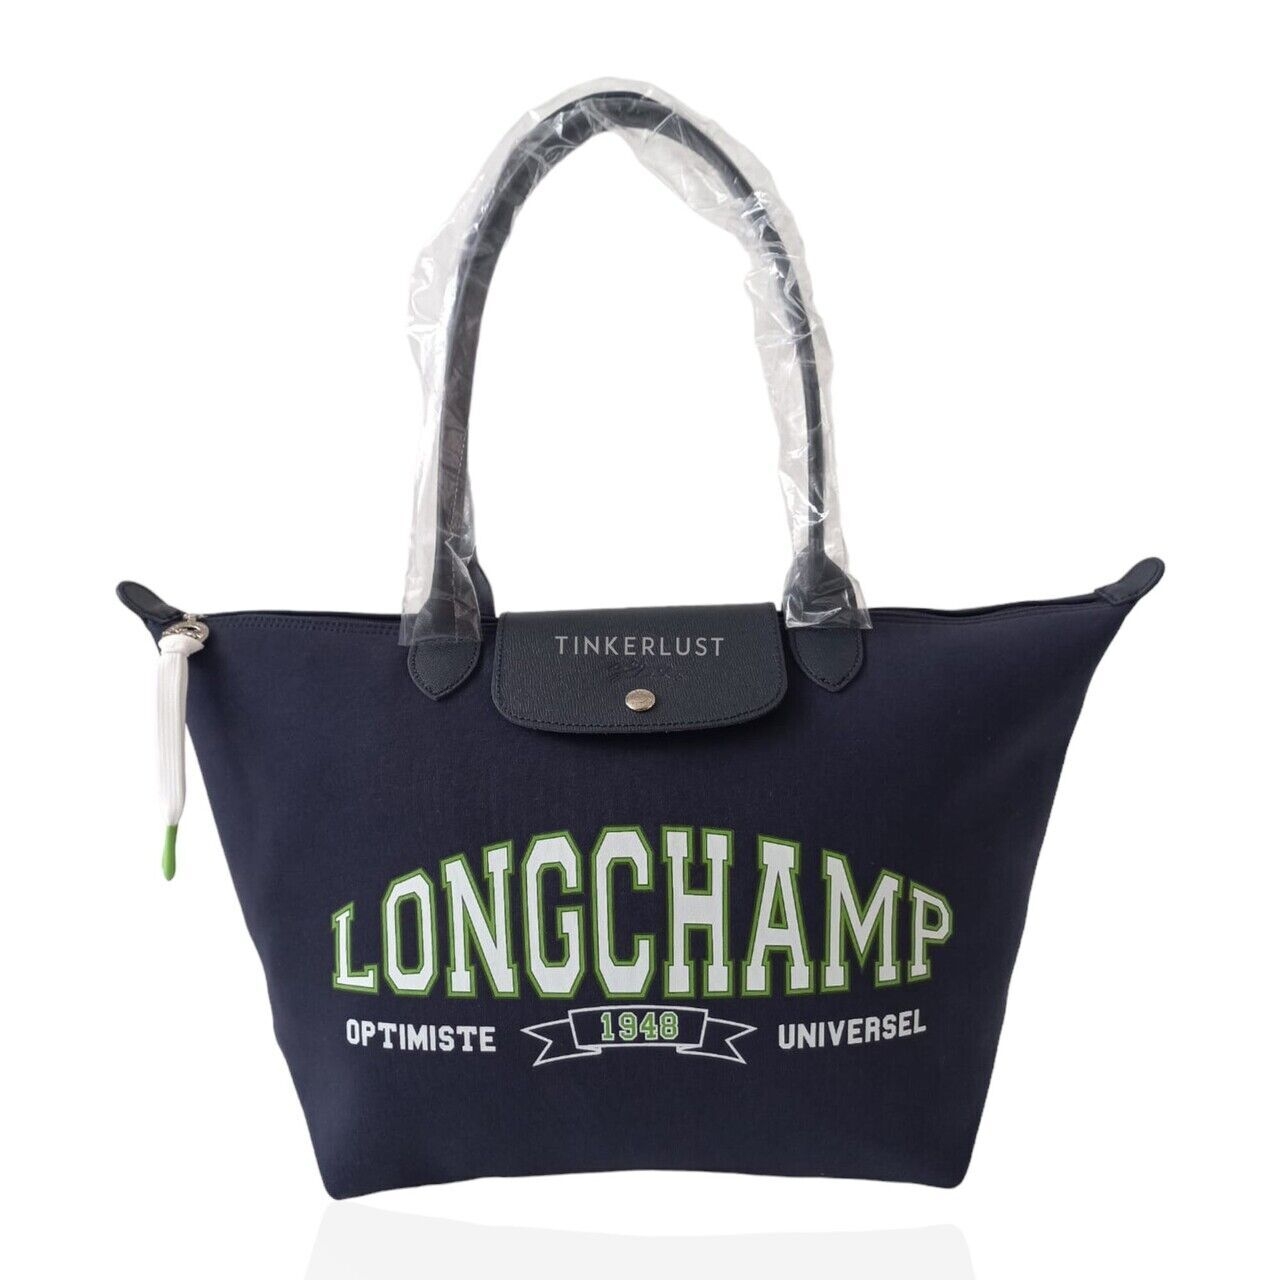 Longchamp Le Pliage University Small Long Handle Navy Tote Bag